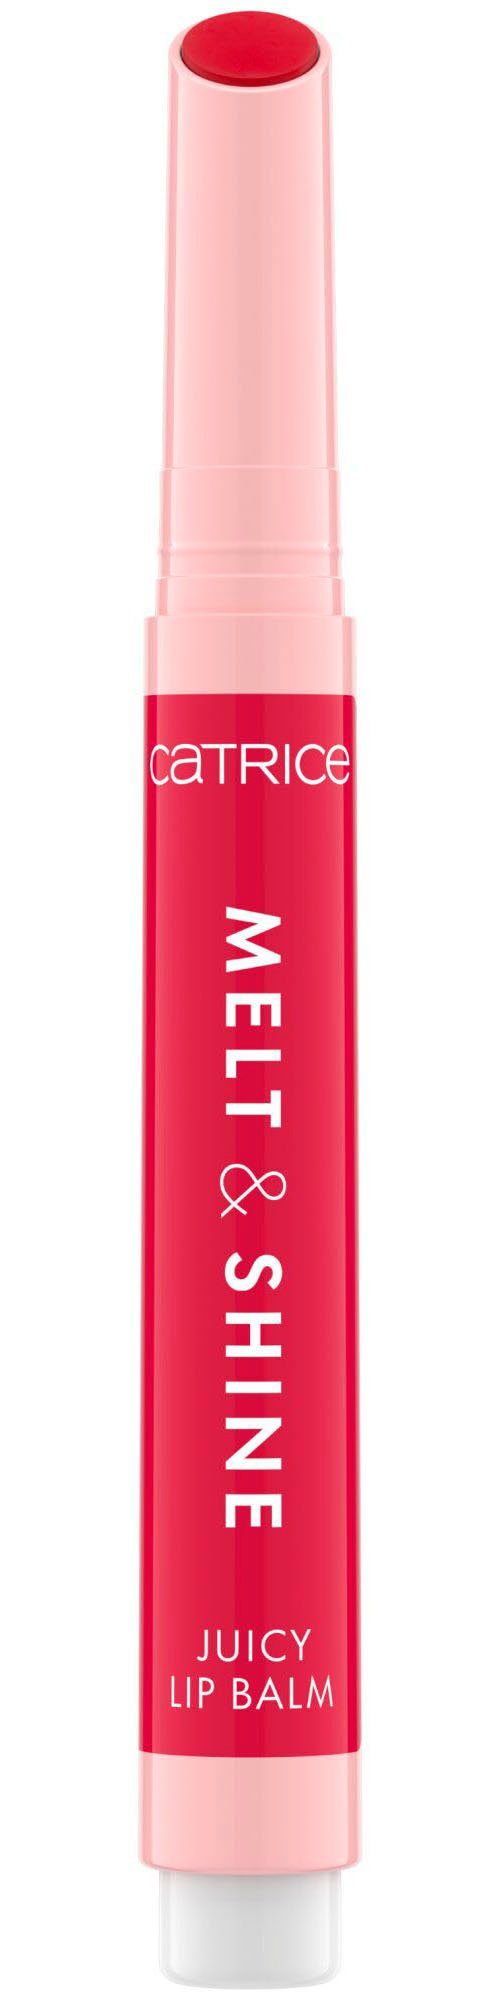 Catrice Lippenbalsam Melt & Shine Juicy Lip Balm, 3-tlg., vegan, ölfrei,  ohne Parabene, Nanopartikel frei, glutenfrei